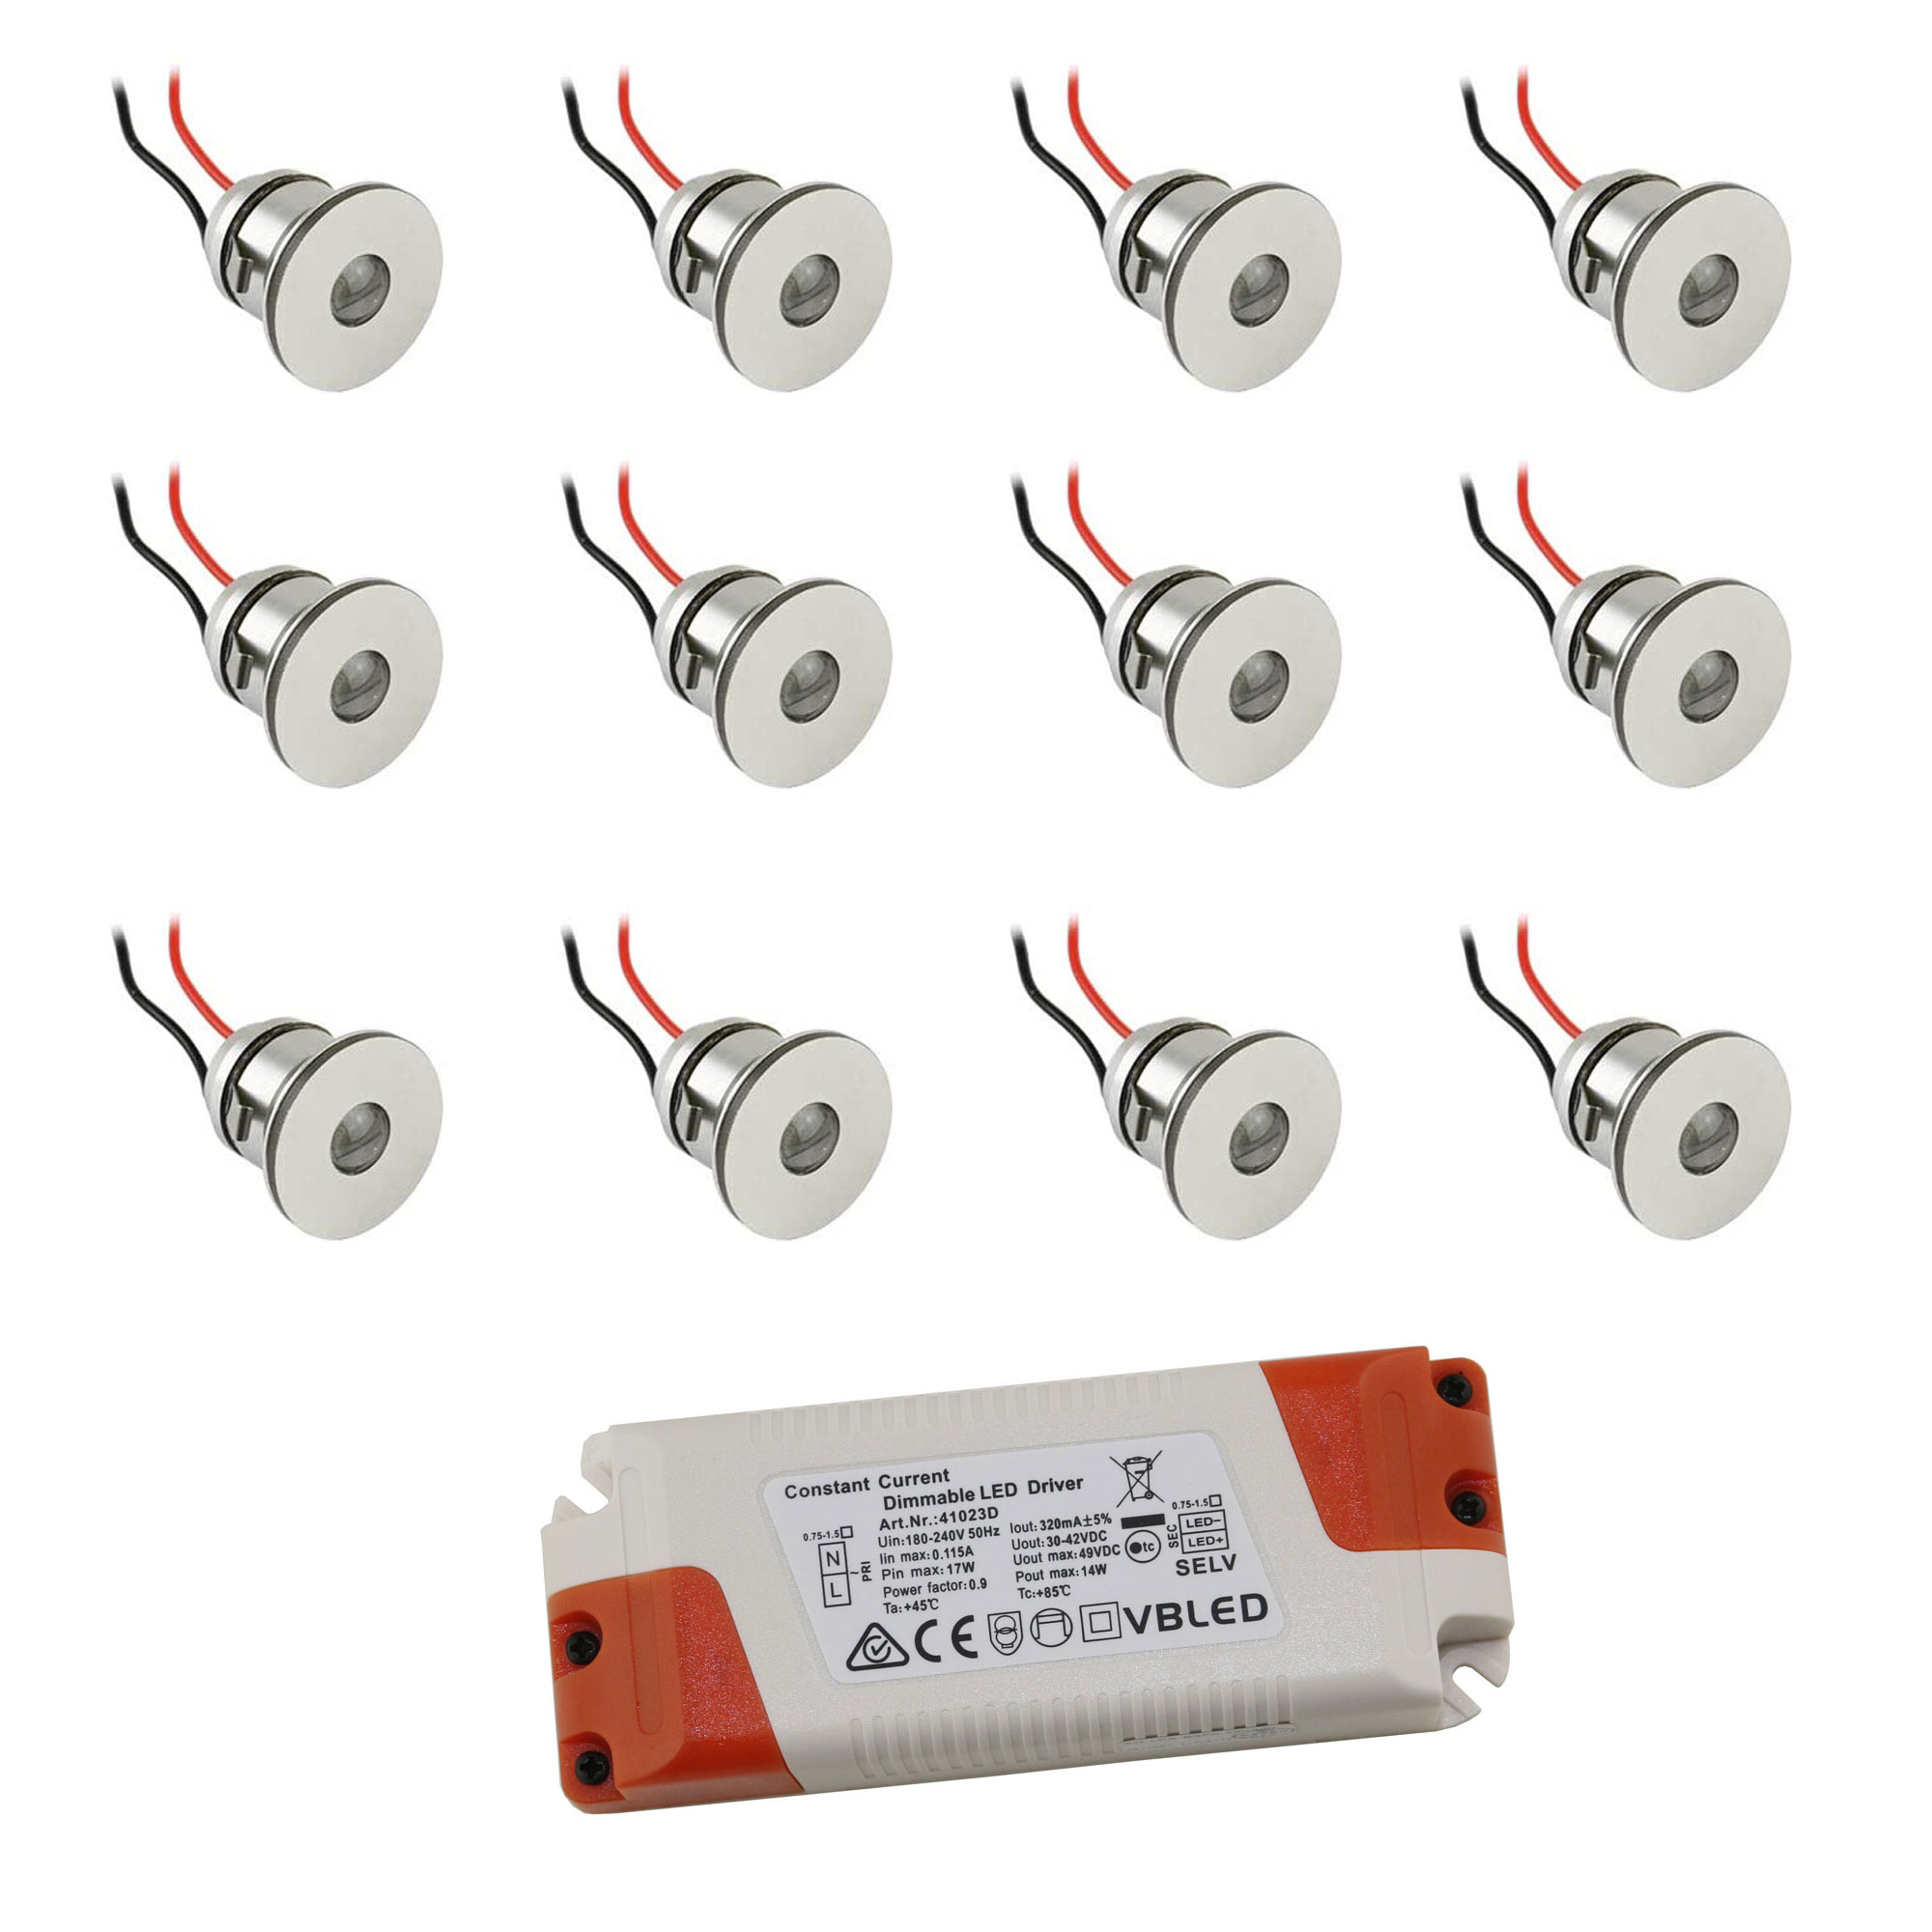 AMP 12-Buchsen LED Verteiler geeignet für 12V Veranda Spots